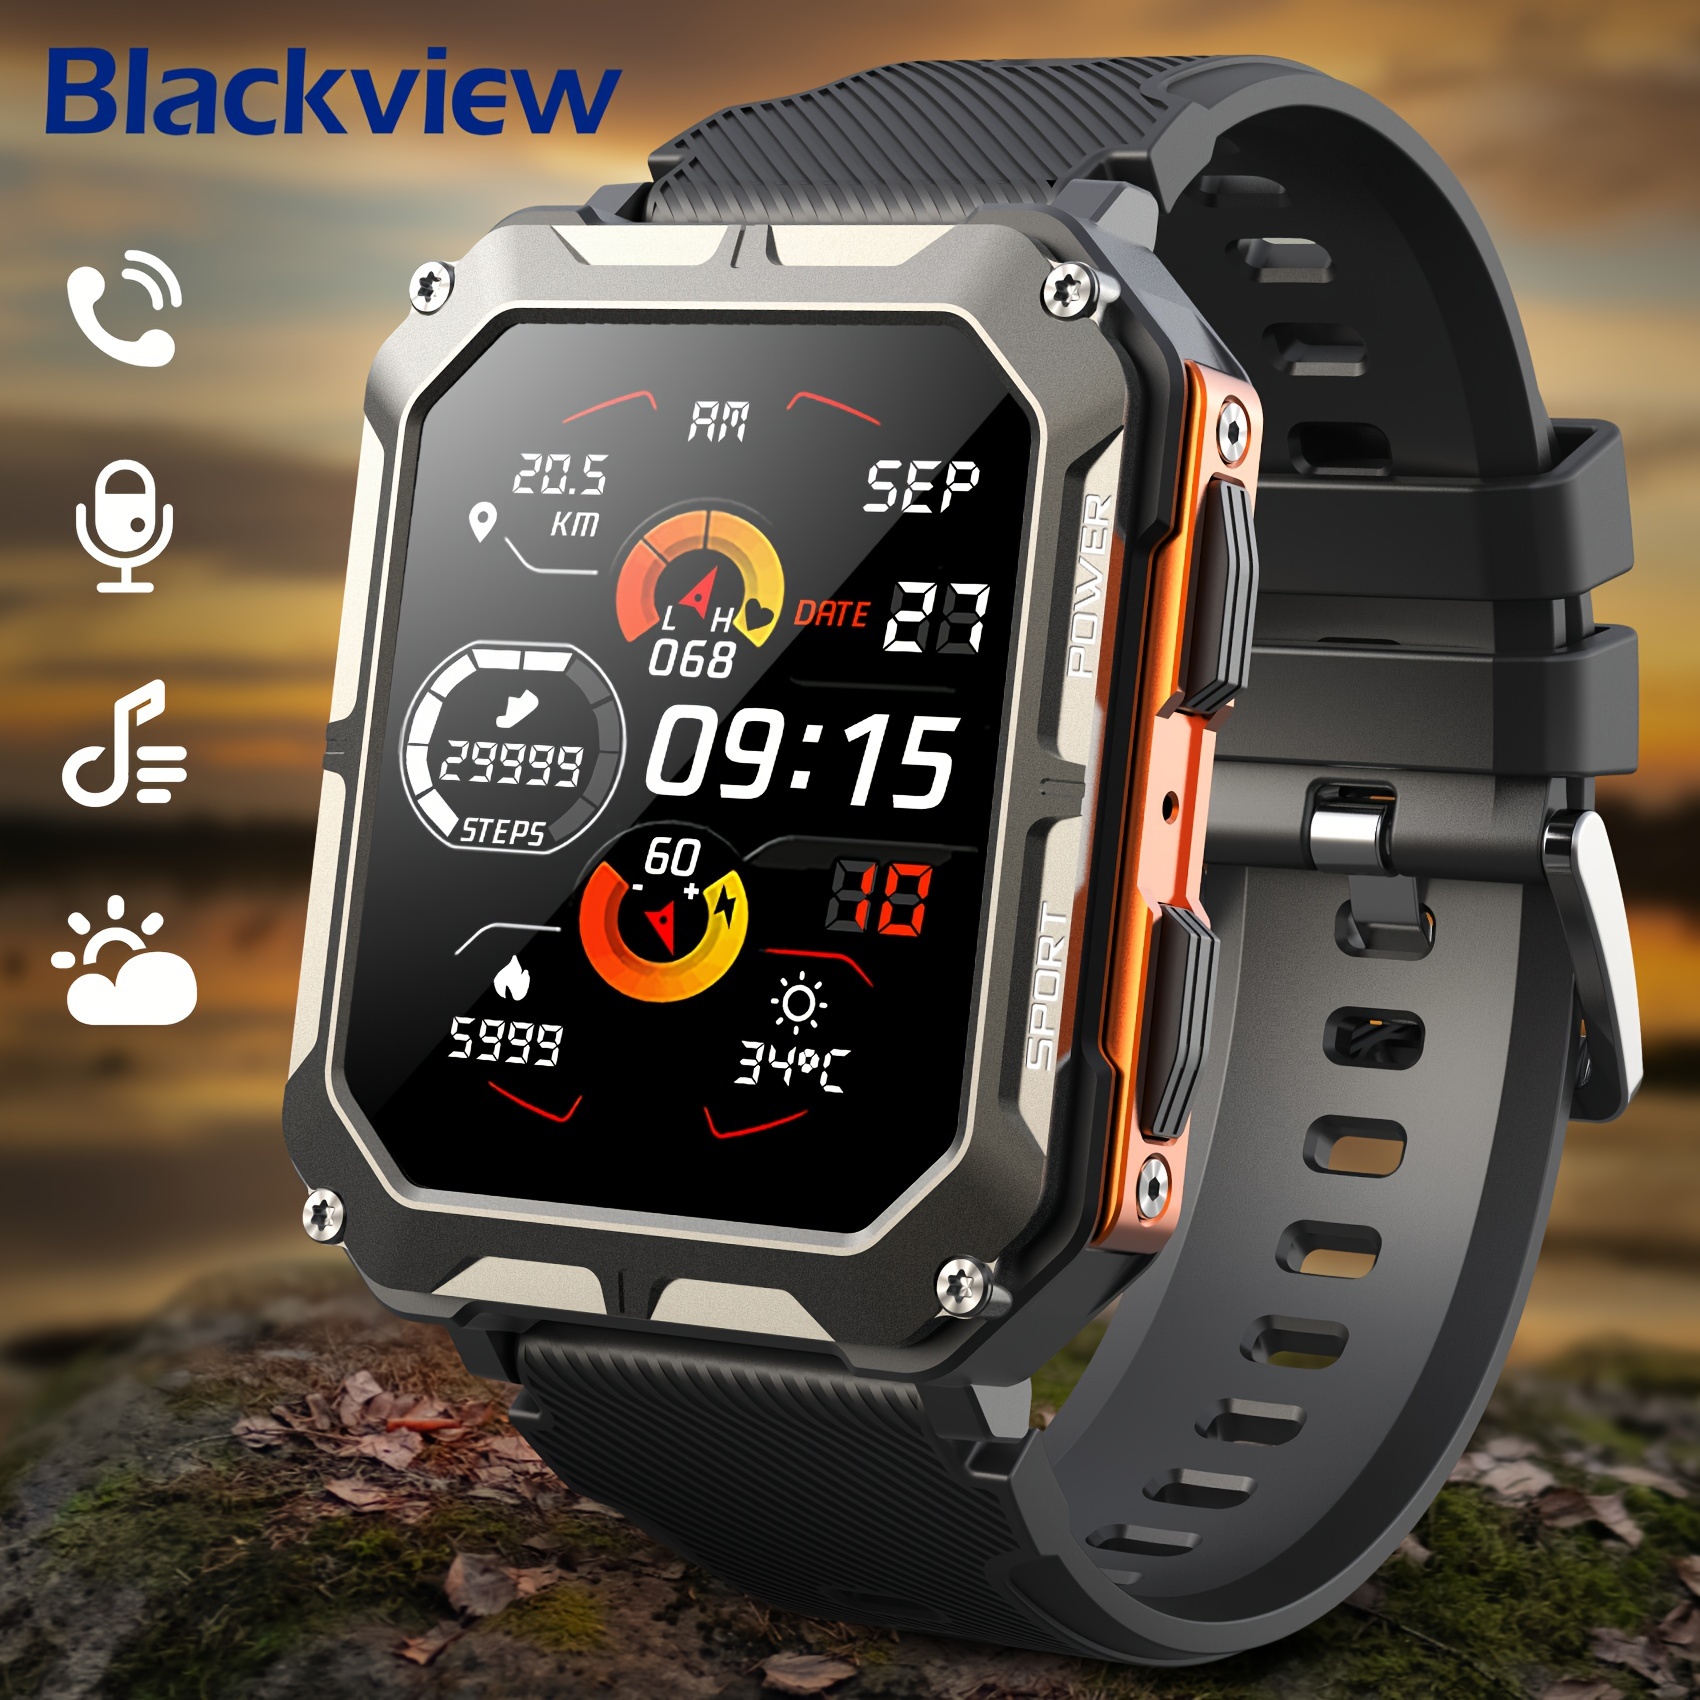 

Montre connectée Blackvire pour hommes et femmes, 1.83" HD Fitness Tracker pour iPhone Android, montre de fitness étanche avec réponse, appel, moniteur de sommeil, 100+ modes sportifs - Orange